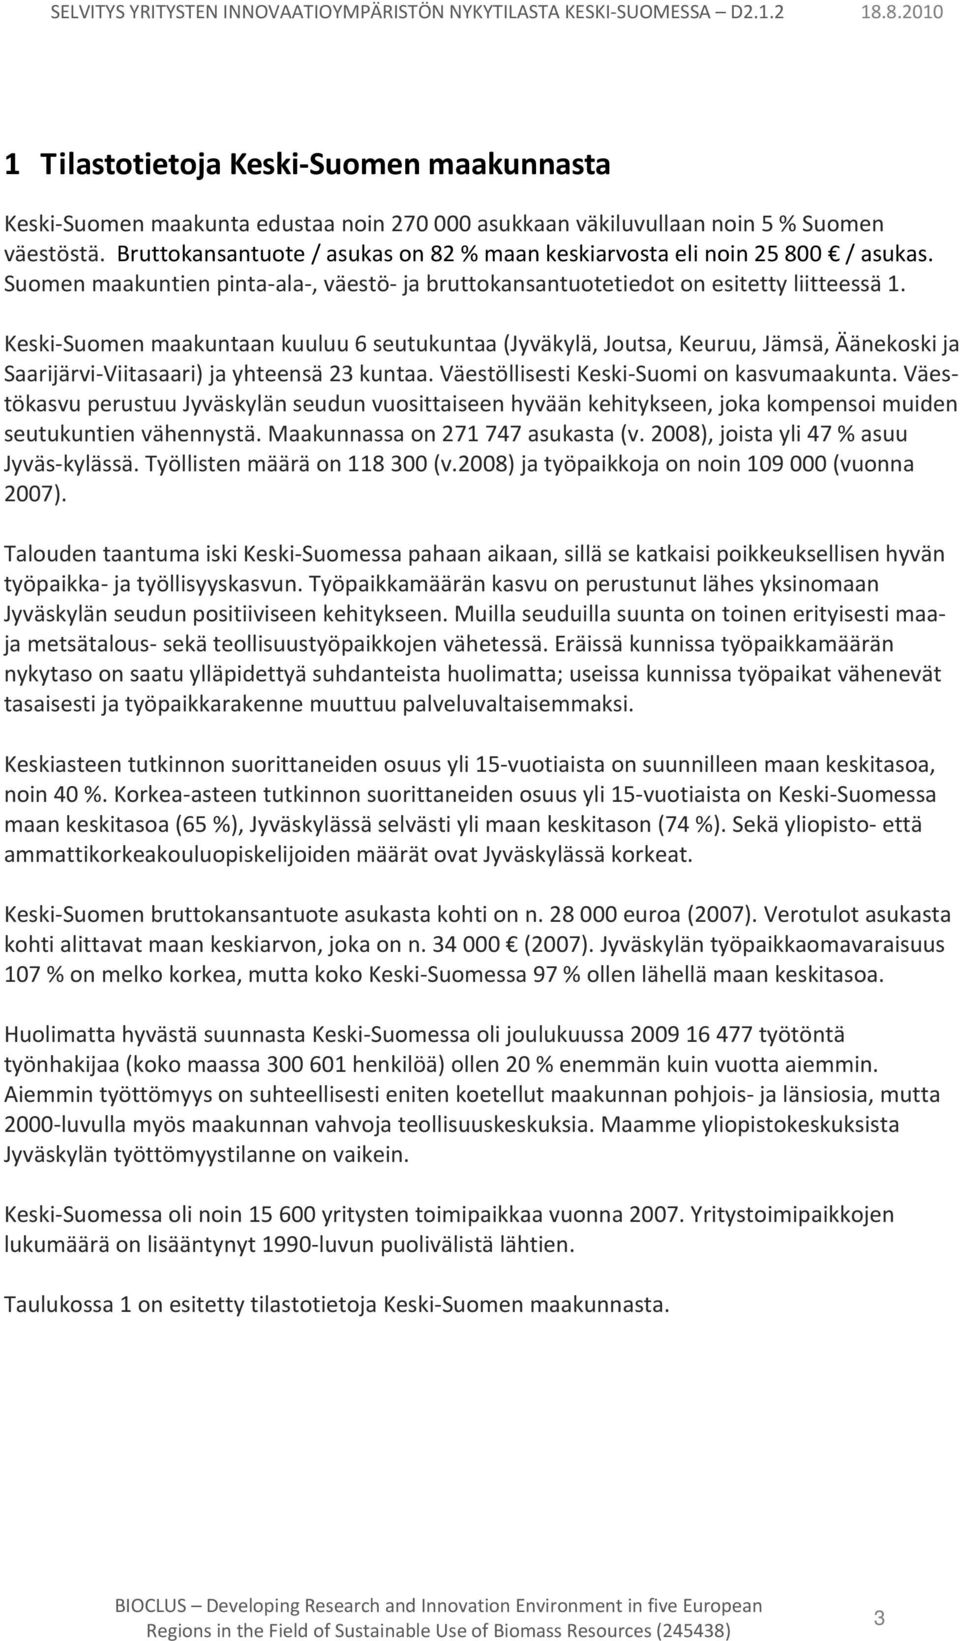 Keski Suomen maakuntaan kuuluu 6 seutukuntaa (Jyväkylä, Joutsa, Keuruu, Jämsä, Äänekoski ja Saarijärvi Viitasaari) ja yhteensä 23 kuntaa. Väestöllisesti Keski Suomi on kasvumaakunta.